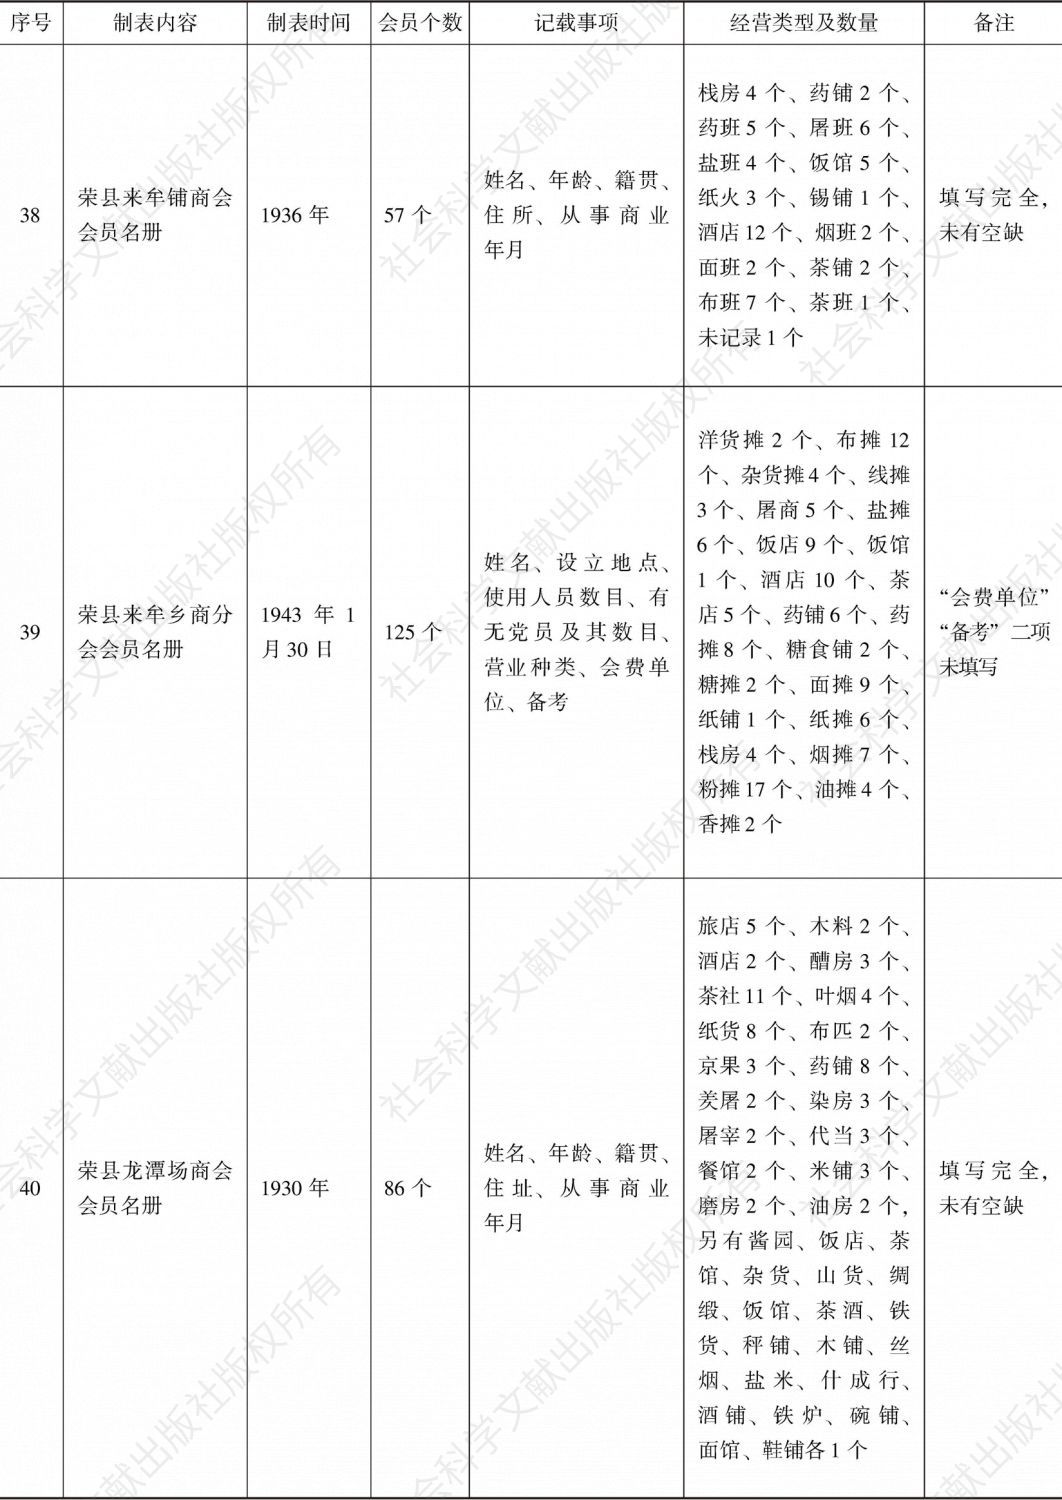 荣县商会事务分所造报名册汇编-续表10